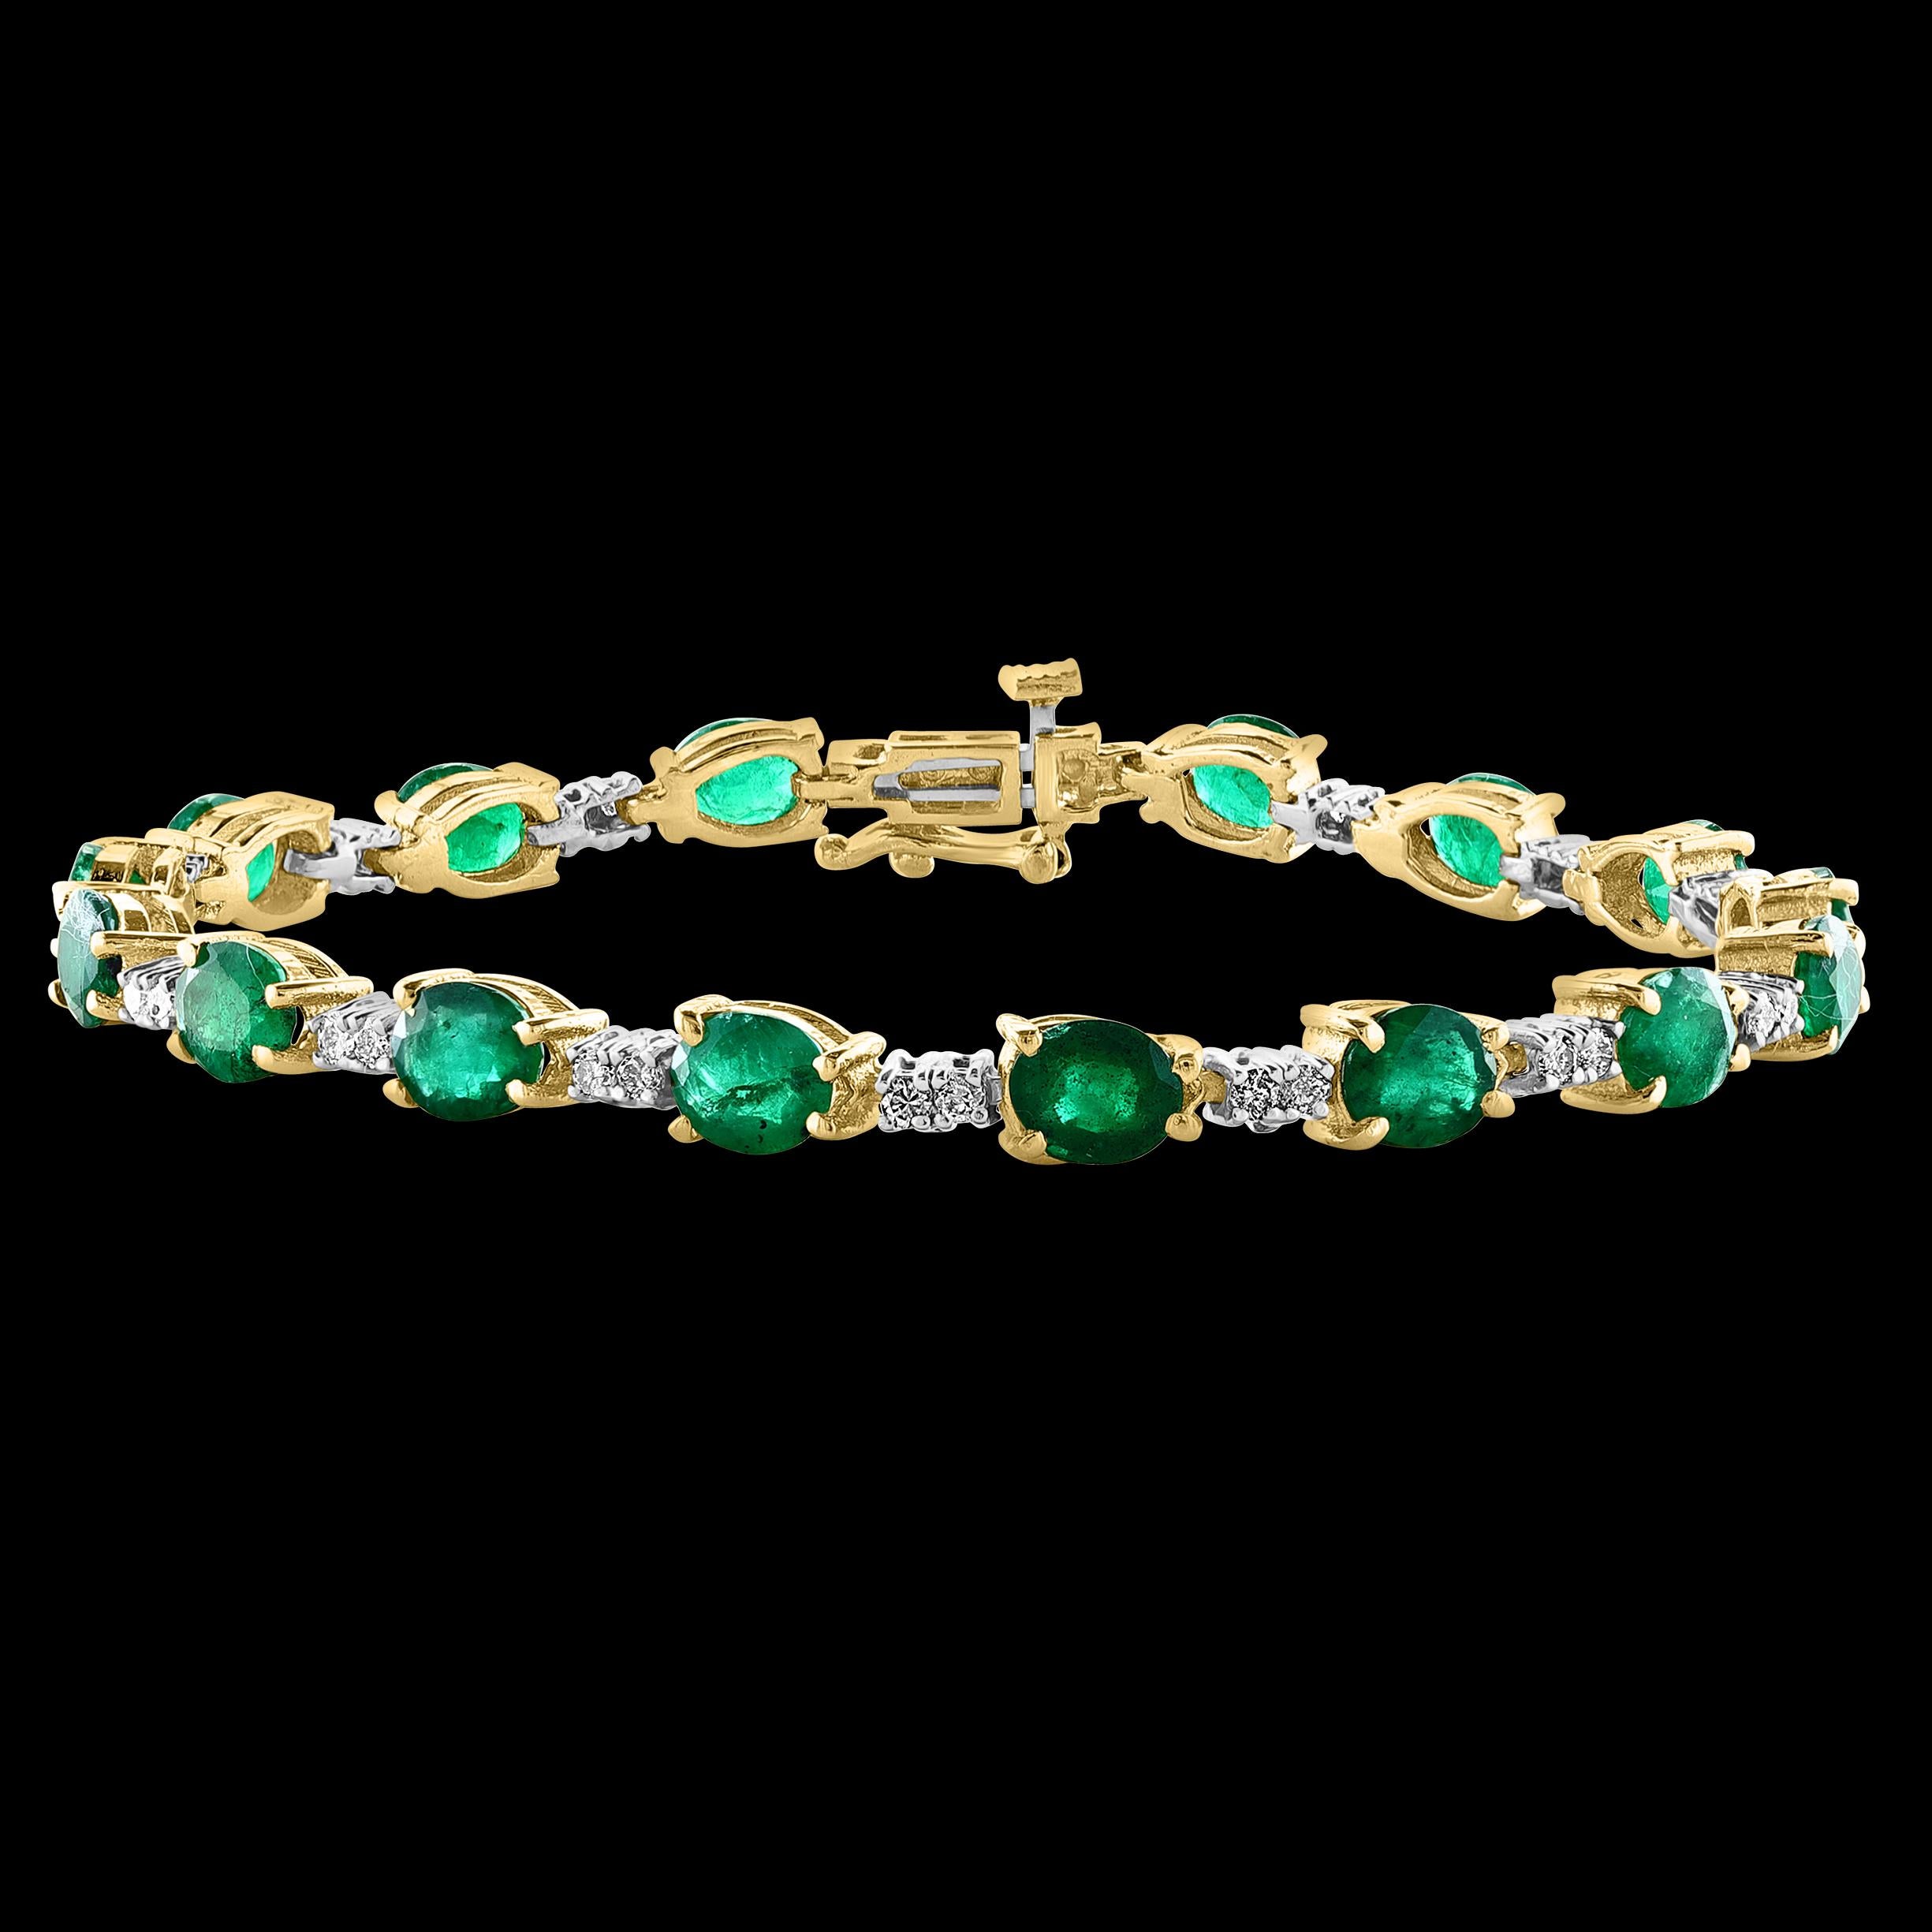  Dieses außergewöhnlich günstige Tennis  armband hat  16 Steine aus Oval  Smaragde  . Jeder Smaragd ist durch zwei Diamanten voneinander getrennt. Das Gesamtgewicht der Smaragde beträgt  etwa 8 Karat. Die Gesamtzahl der Diamanten beträgt 30  und der